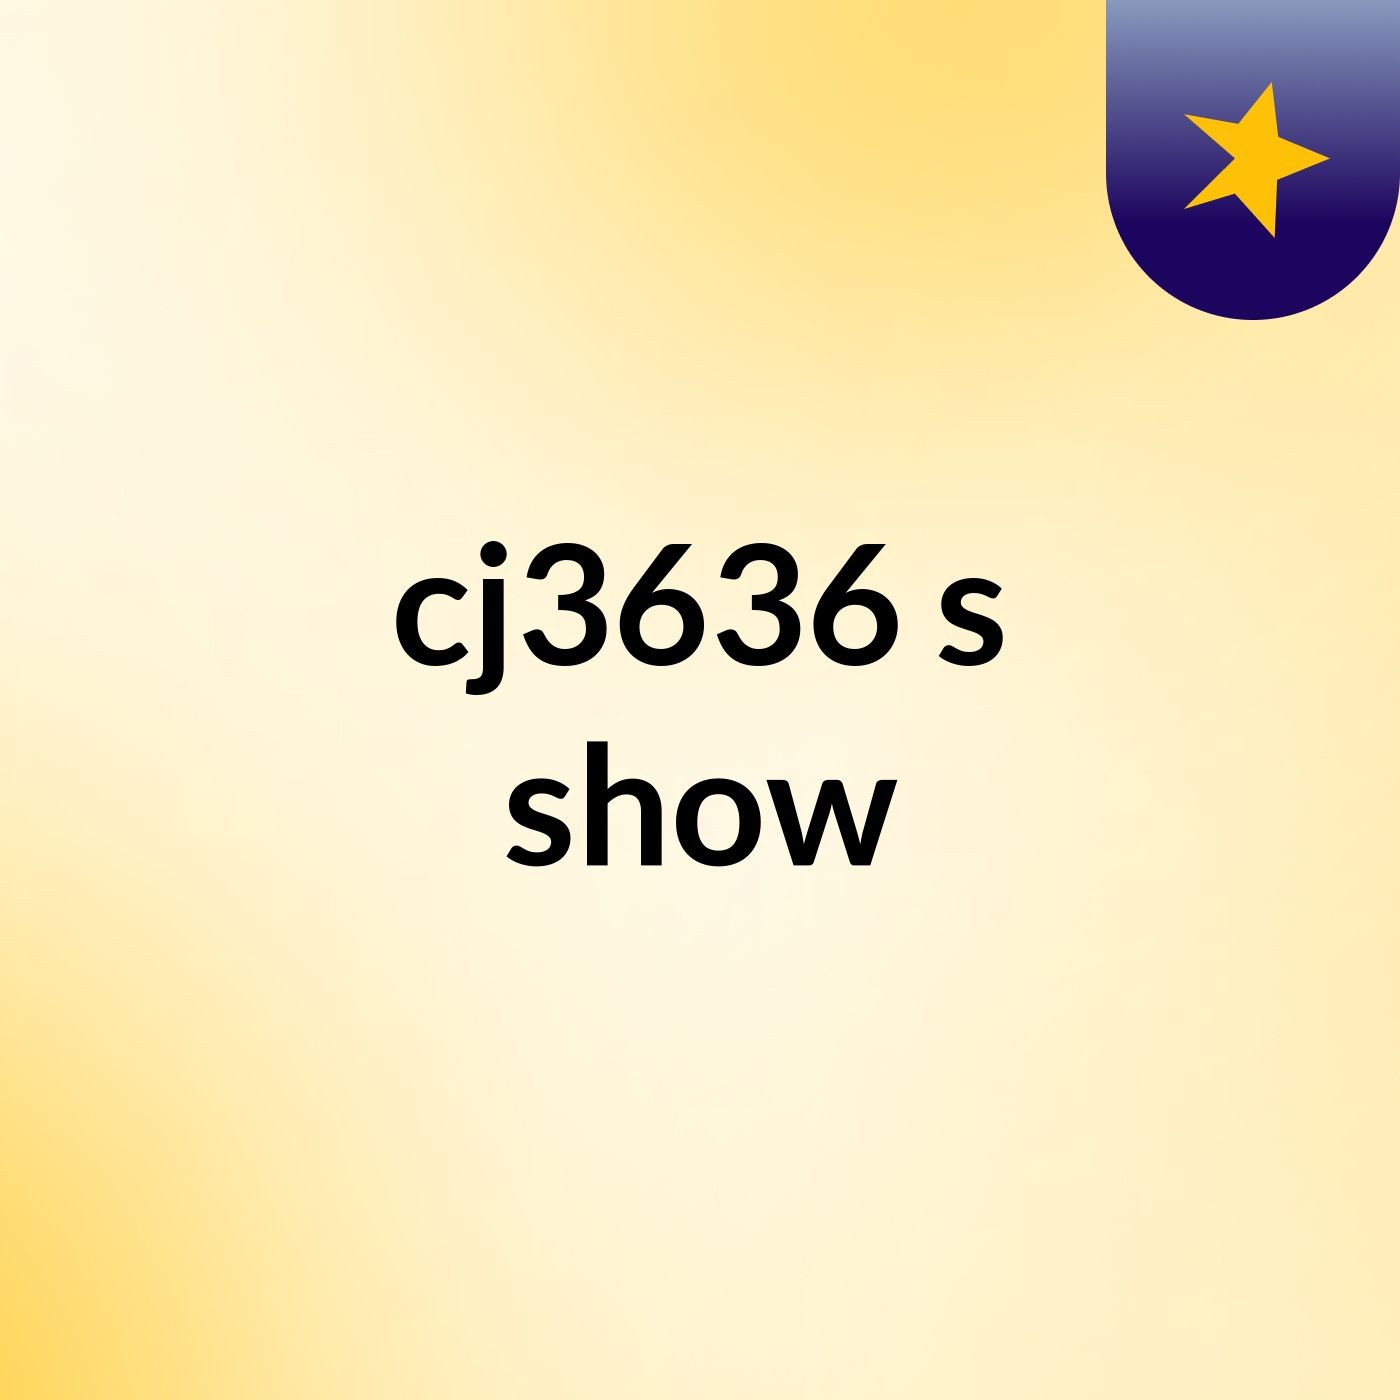 cj3636's show